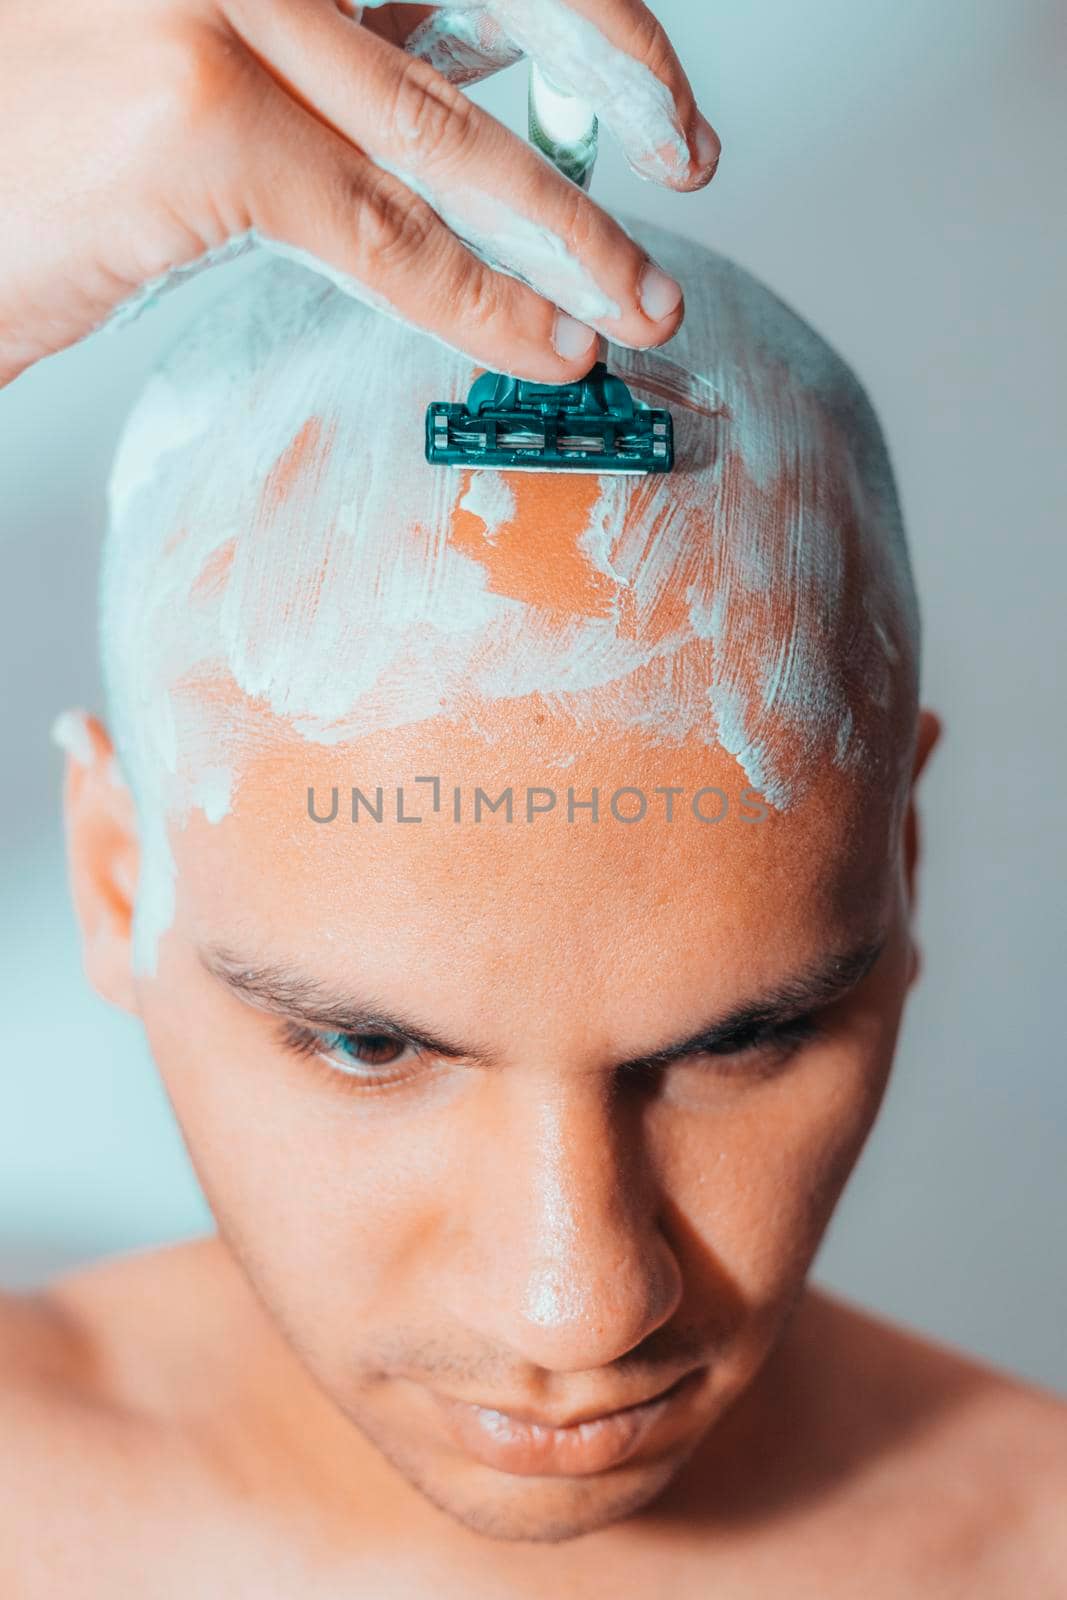 Man Shaving His Head Using White Foam